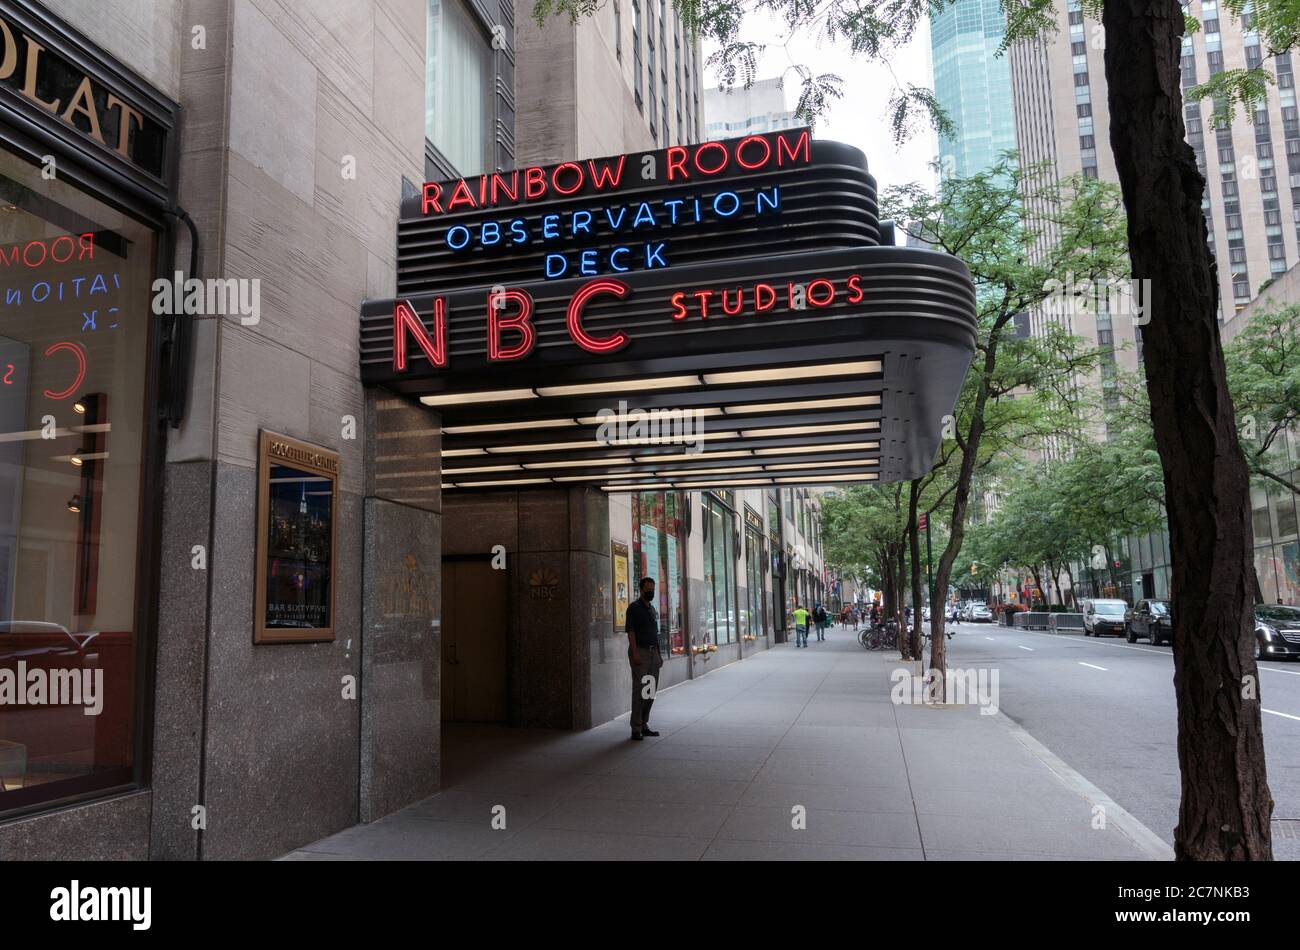 Panneau au néon sur l'entrée de la Rainbow Room, de la terrasse panoramique et des studios NBC du Rockefeller Center ou du Centre Banque D'Images